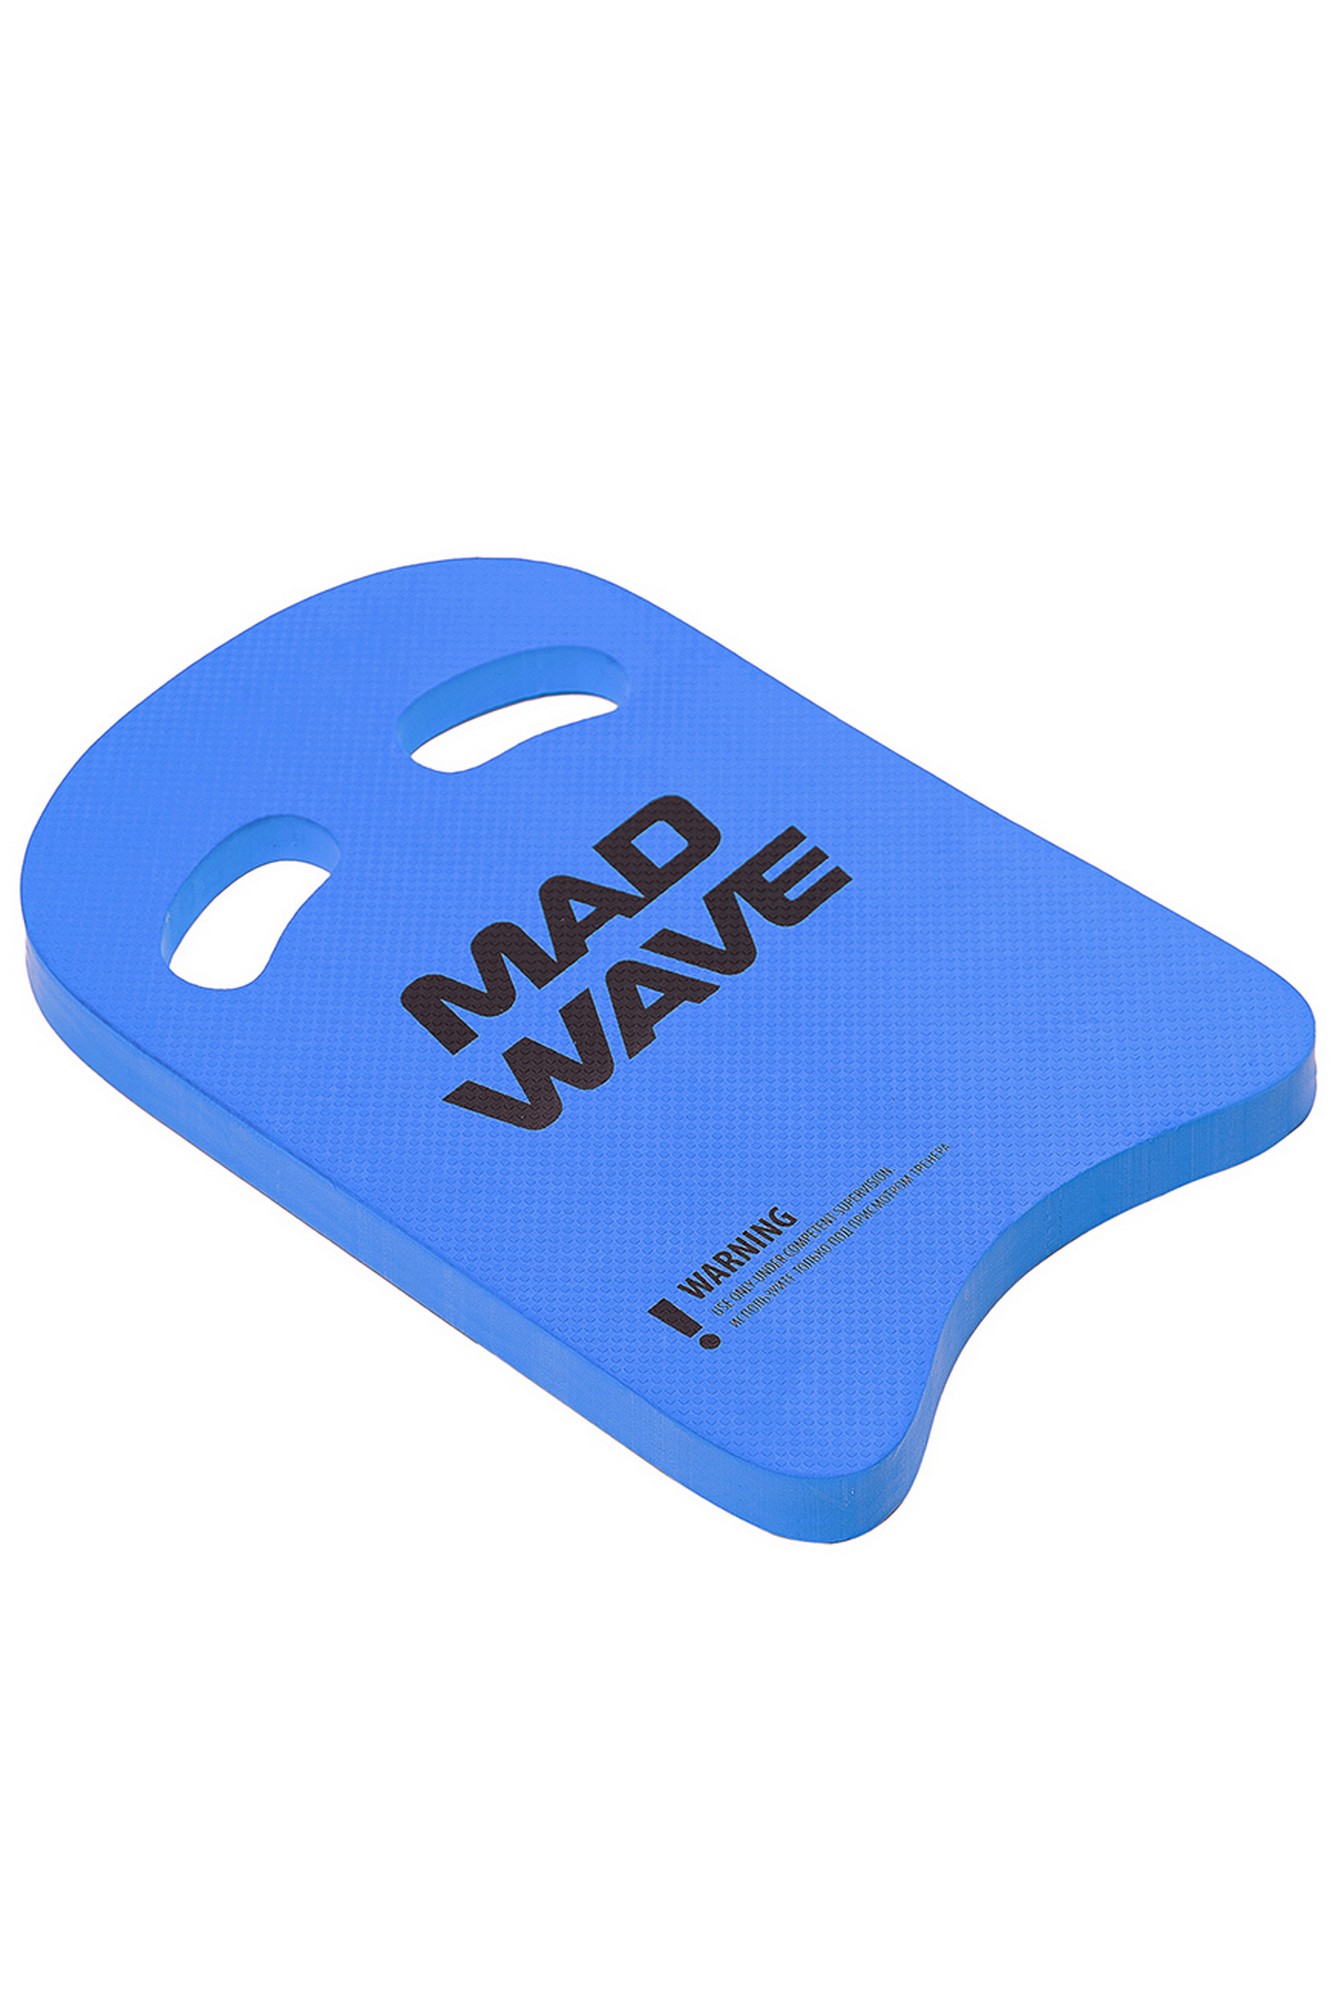    Mad Wave Kickboard Light 35 M0721 03 0 04W